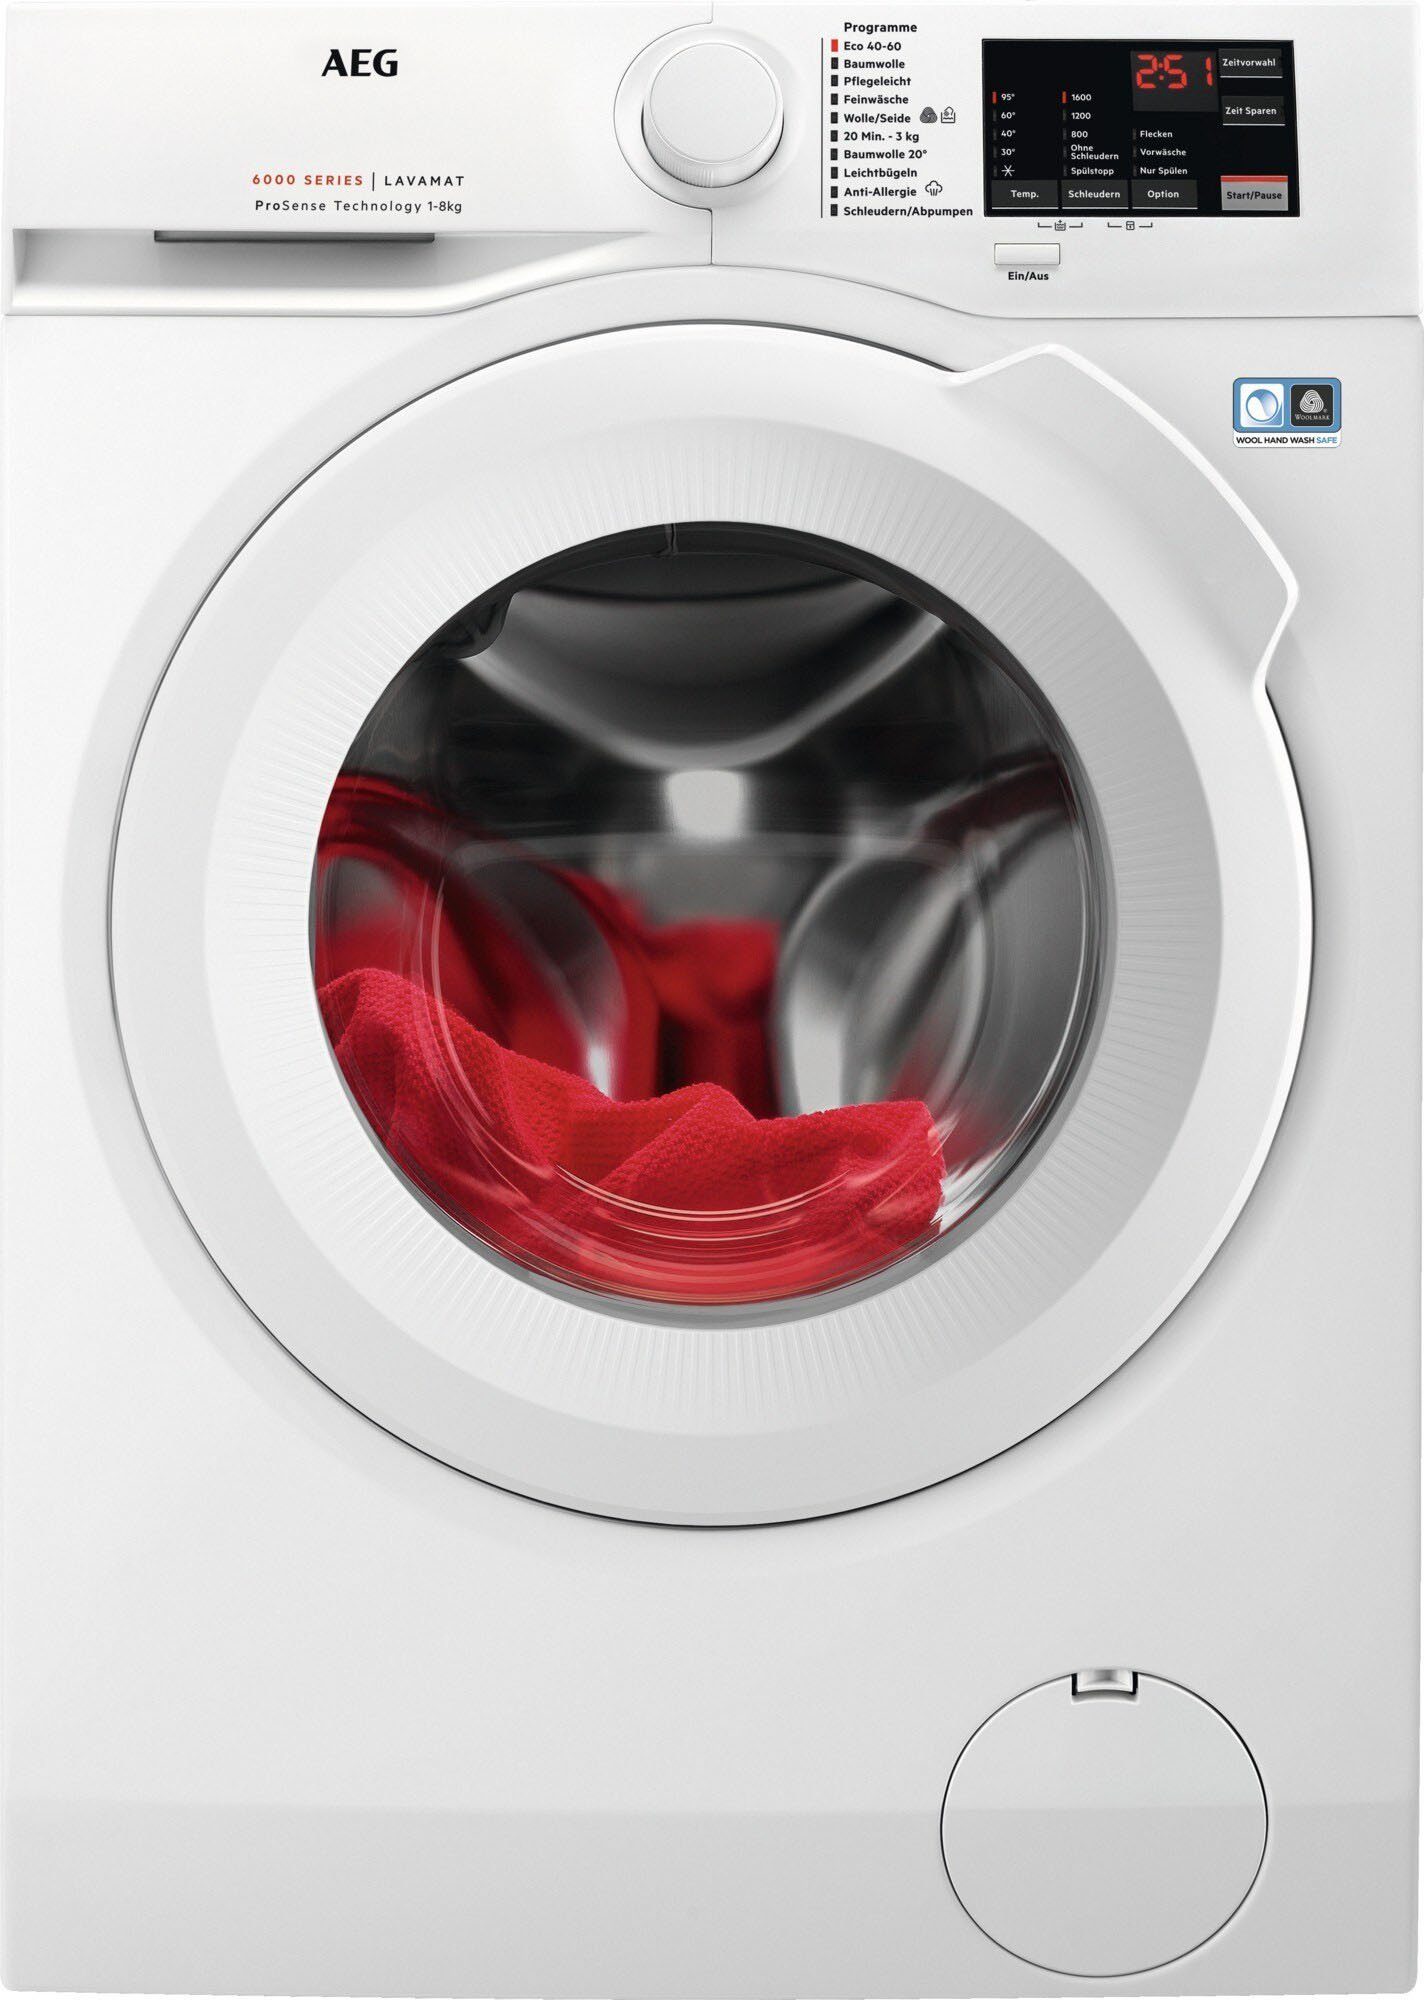 AEG Waschmaschine Anti-Allergie Hygiene-Programm Programm 99,99 Entfernt L6FBA51680, mit % über Dampf 8 Viren - 1600 mit Bakterien kg, der und Hygiene-/ Dampf, U/min